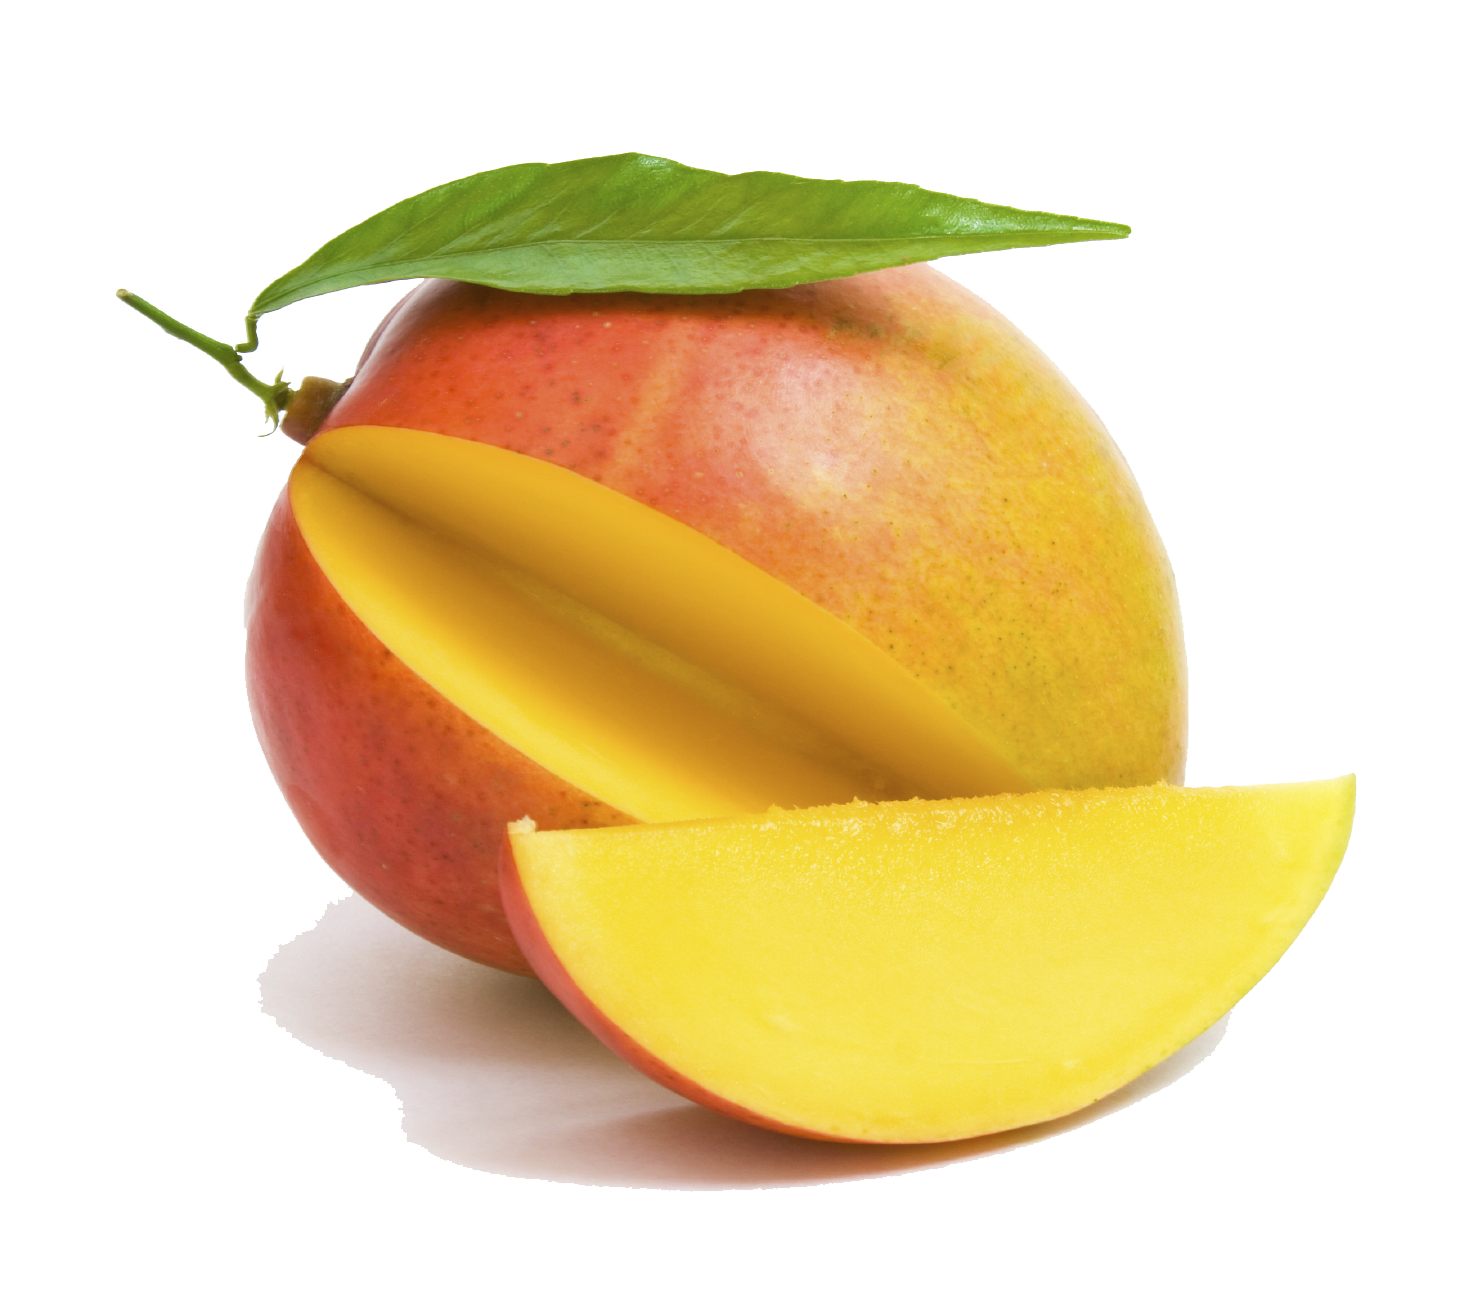 mango fruit images free download